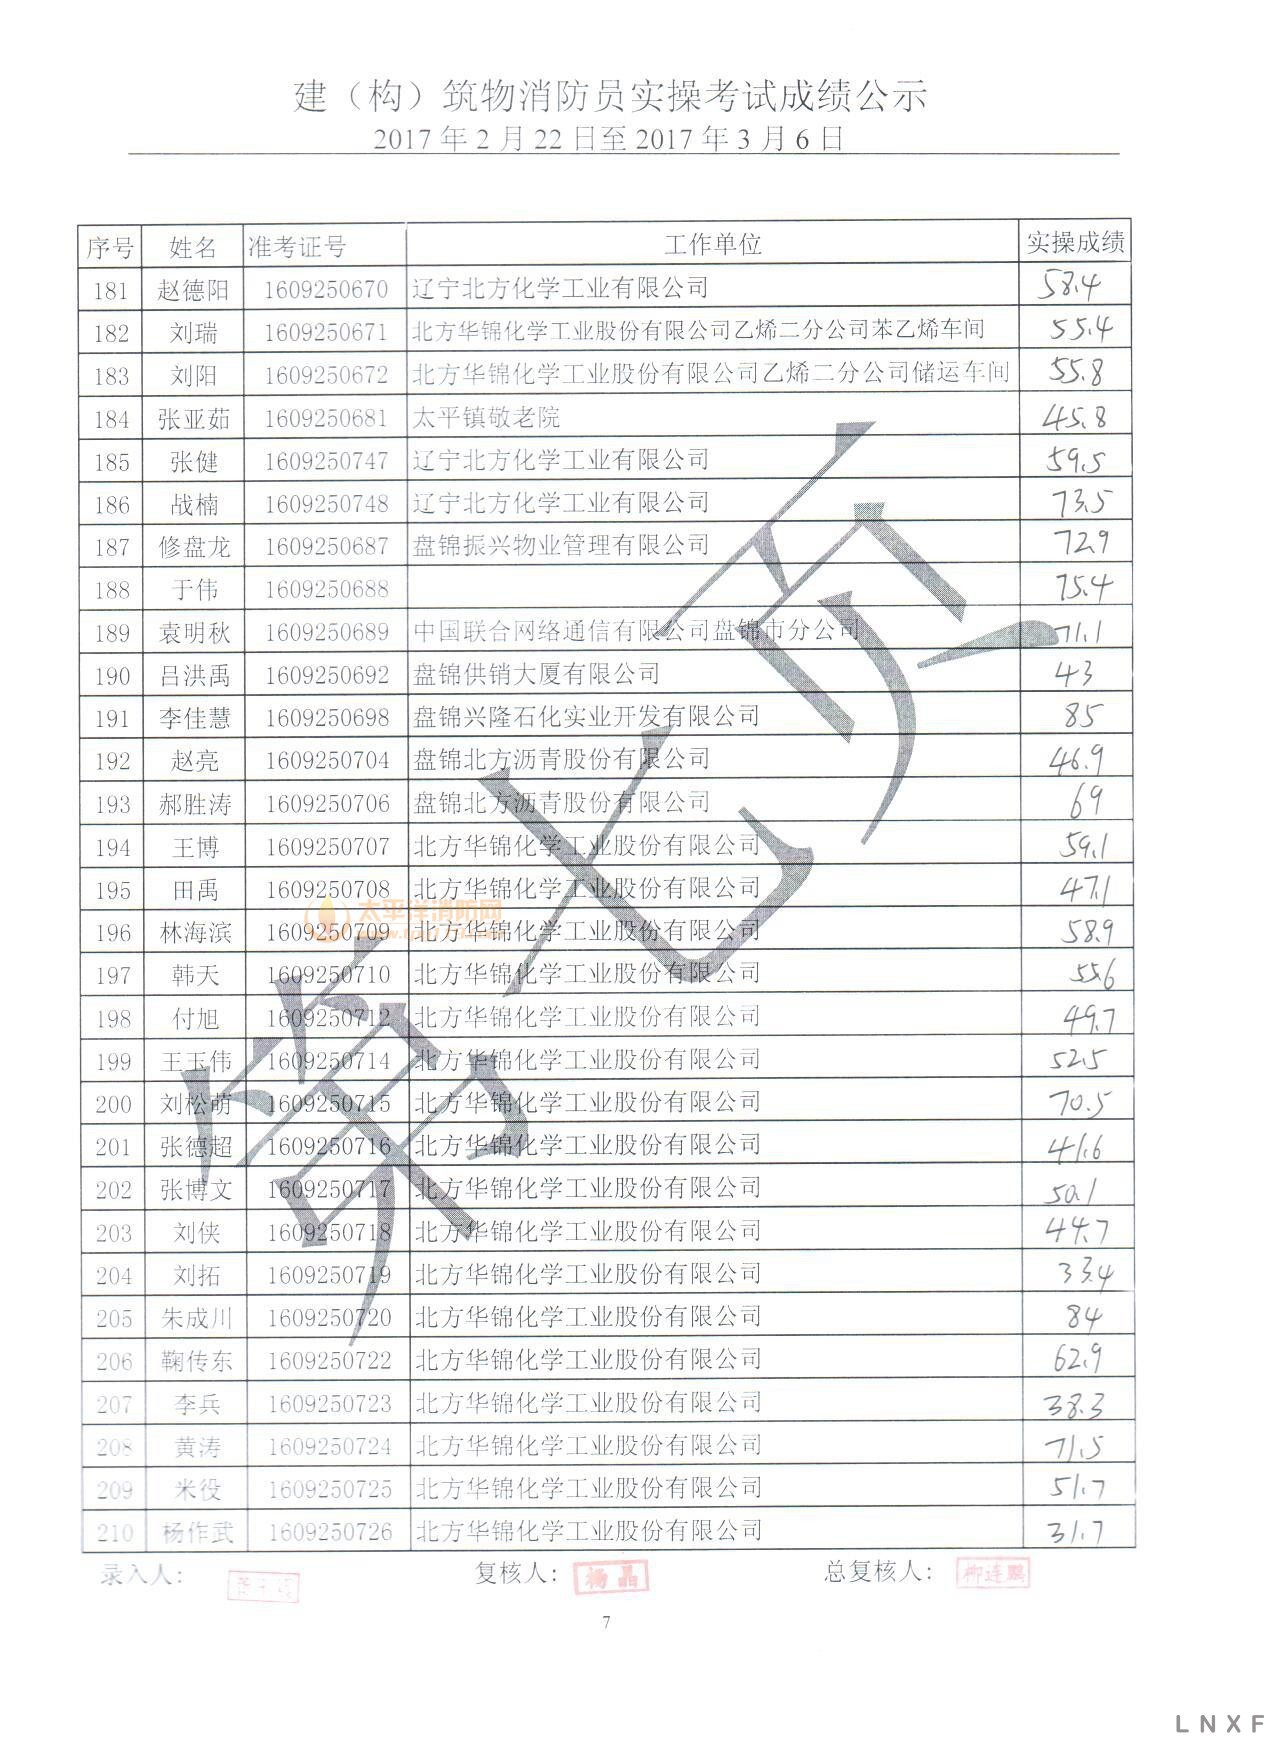 【实操成绩】辽宁2017年（2.22-03.06） 建构筑物消防员实操考试成绩公示